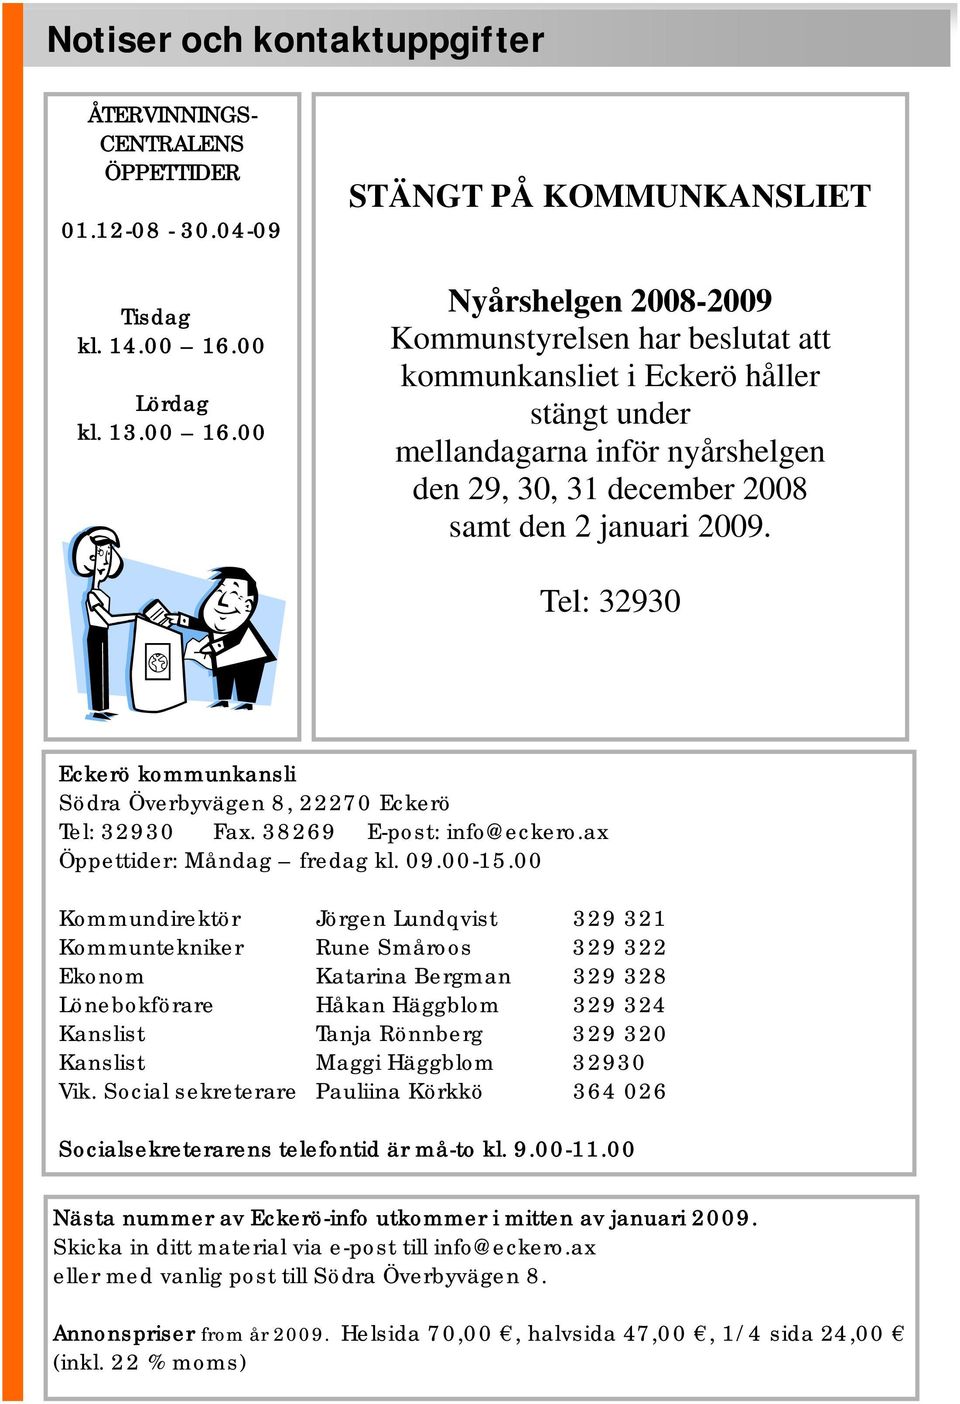 00 STÄNGT PÅ KOMMUNKANSLIET Nyårshelgen 2008-2009 Kommunstyrelsen har beslutat att kommunkansliet i Eckerö håller stängt under mellandagarna inför nyårshelgen den 29, 30, 31 december 2008 samt den 2